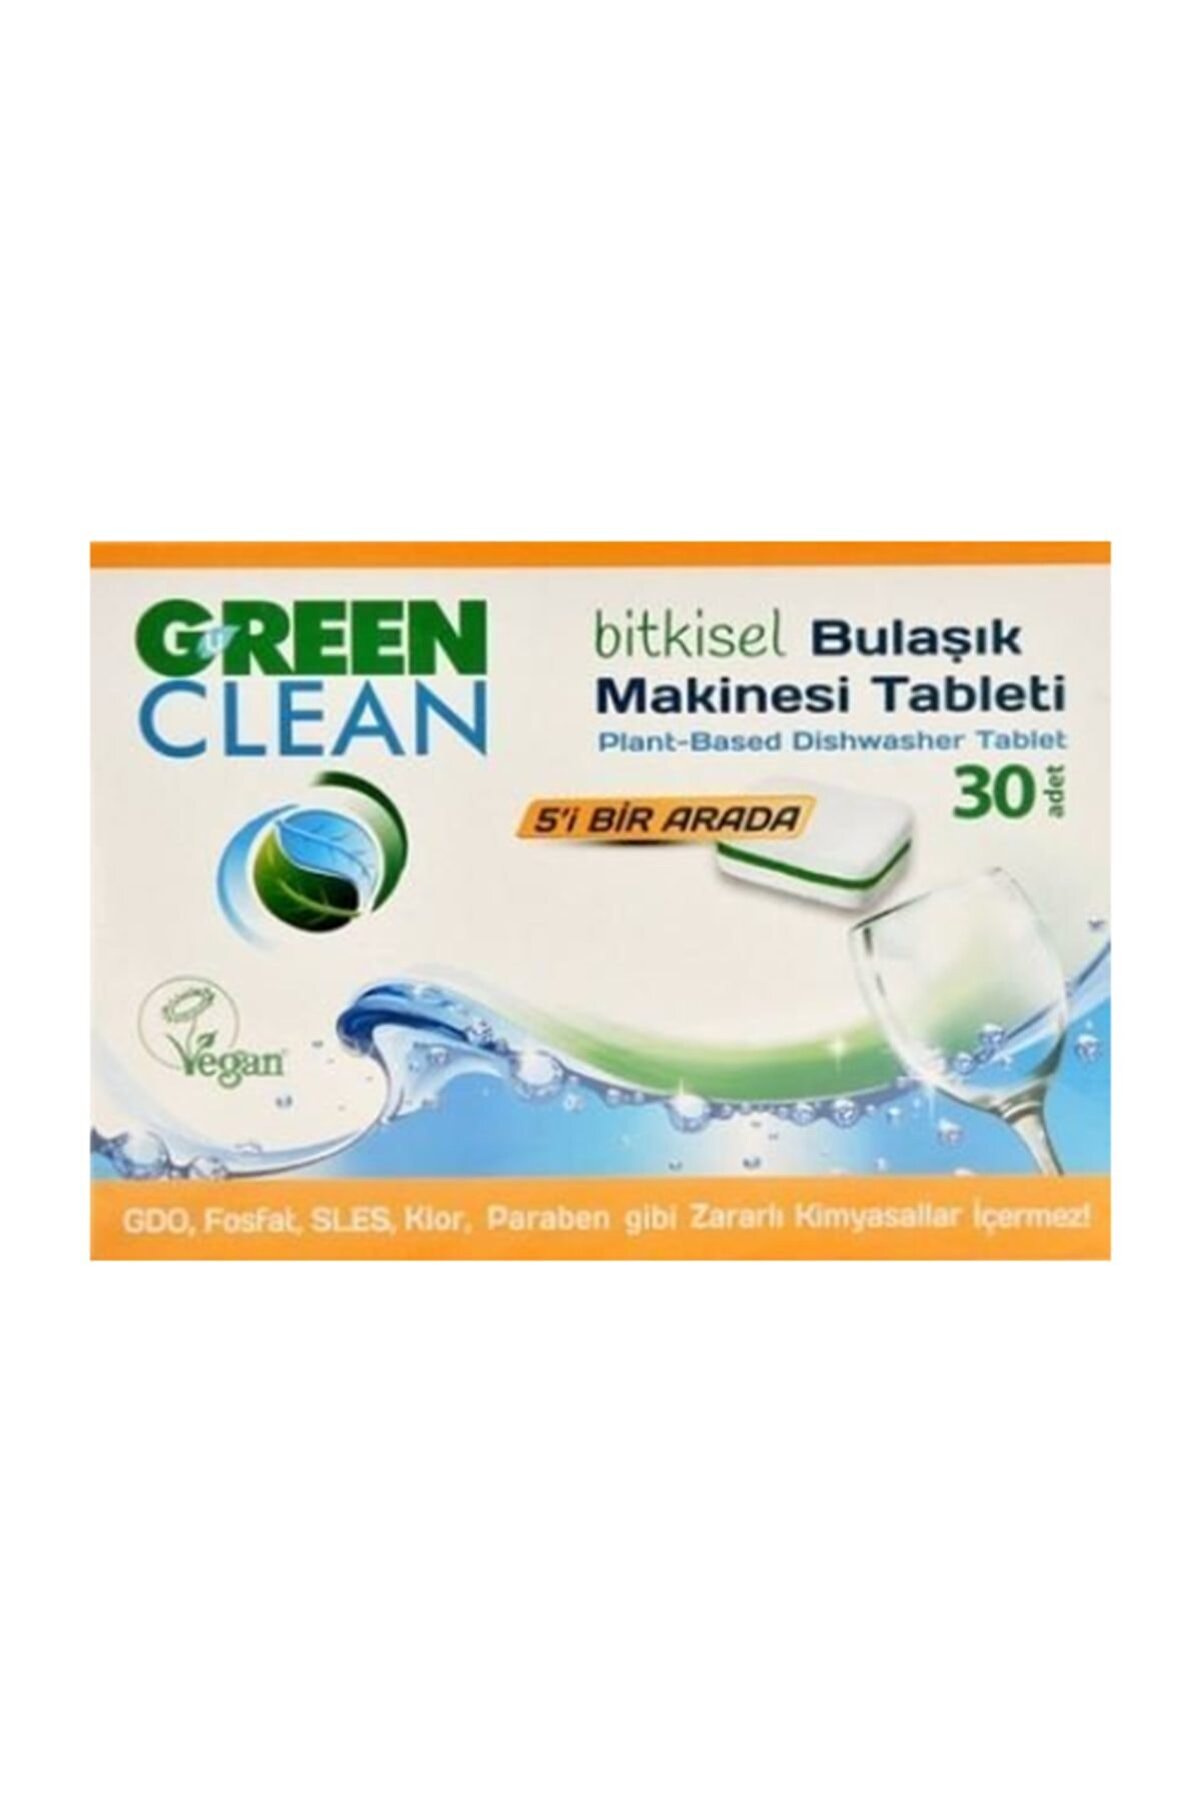 Green Clean Bitkisel Bulaşık Makinası Tableti 30 Adet 8690588005546